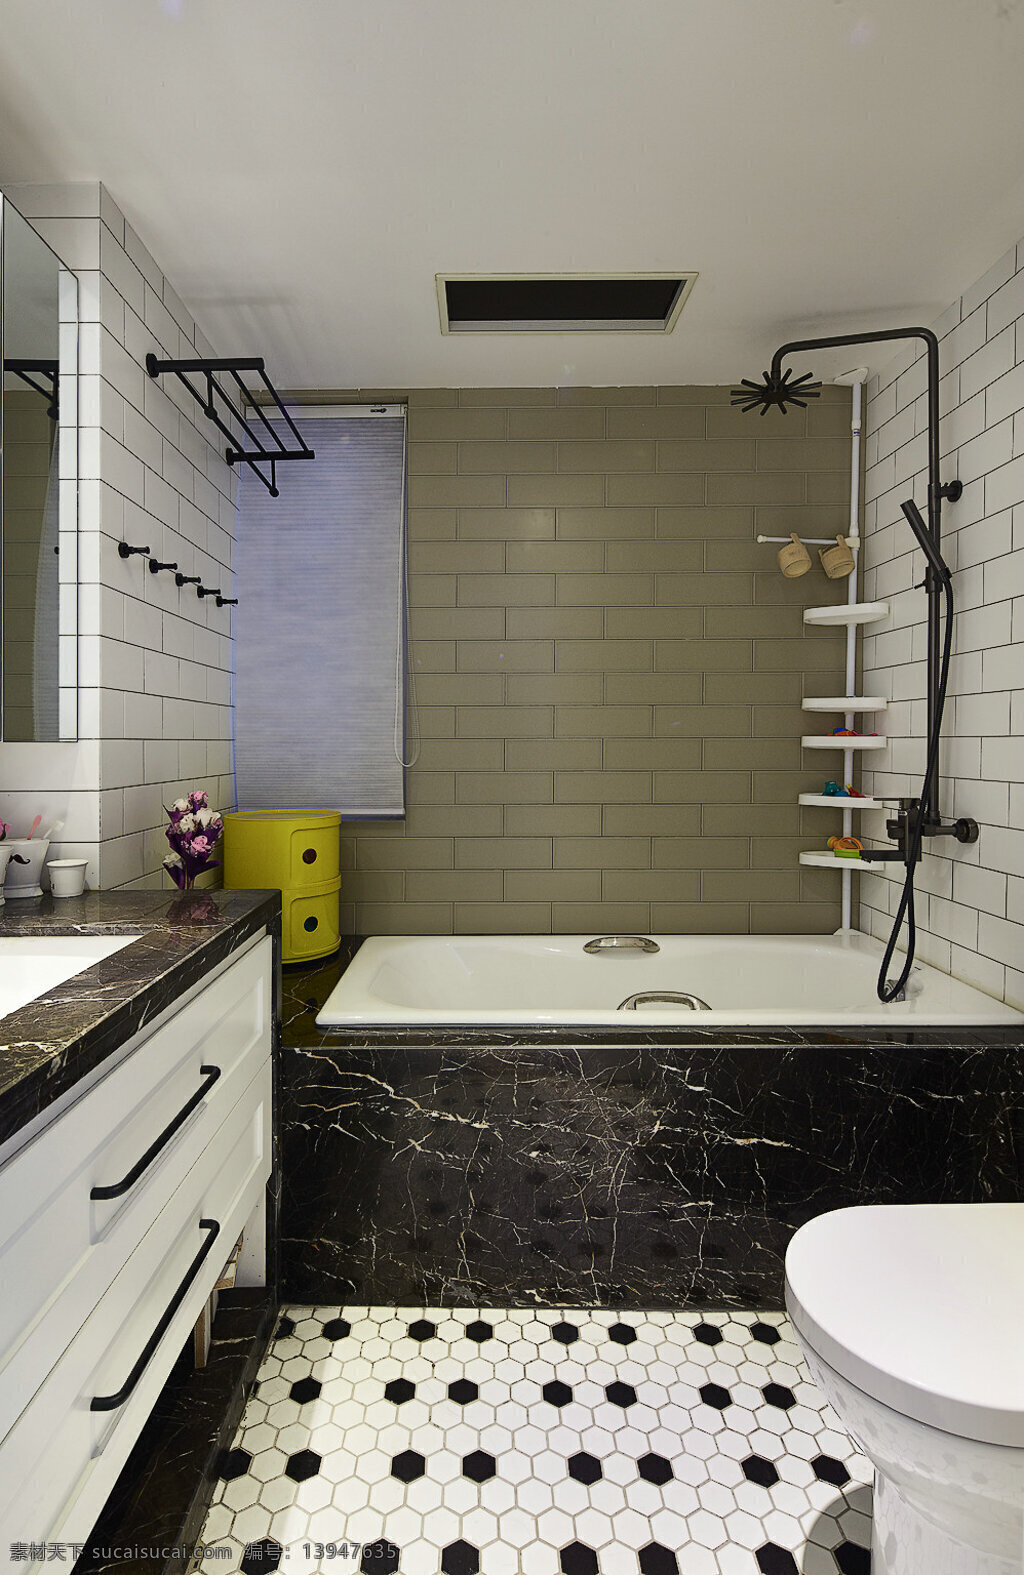 现代 时尚 卫生间 土褐色 背景 墙 室内装修 效果图 瓷砖背景墙 黑色洗手台 黑色浴缸 卫生间装修